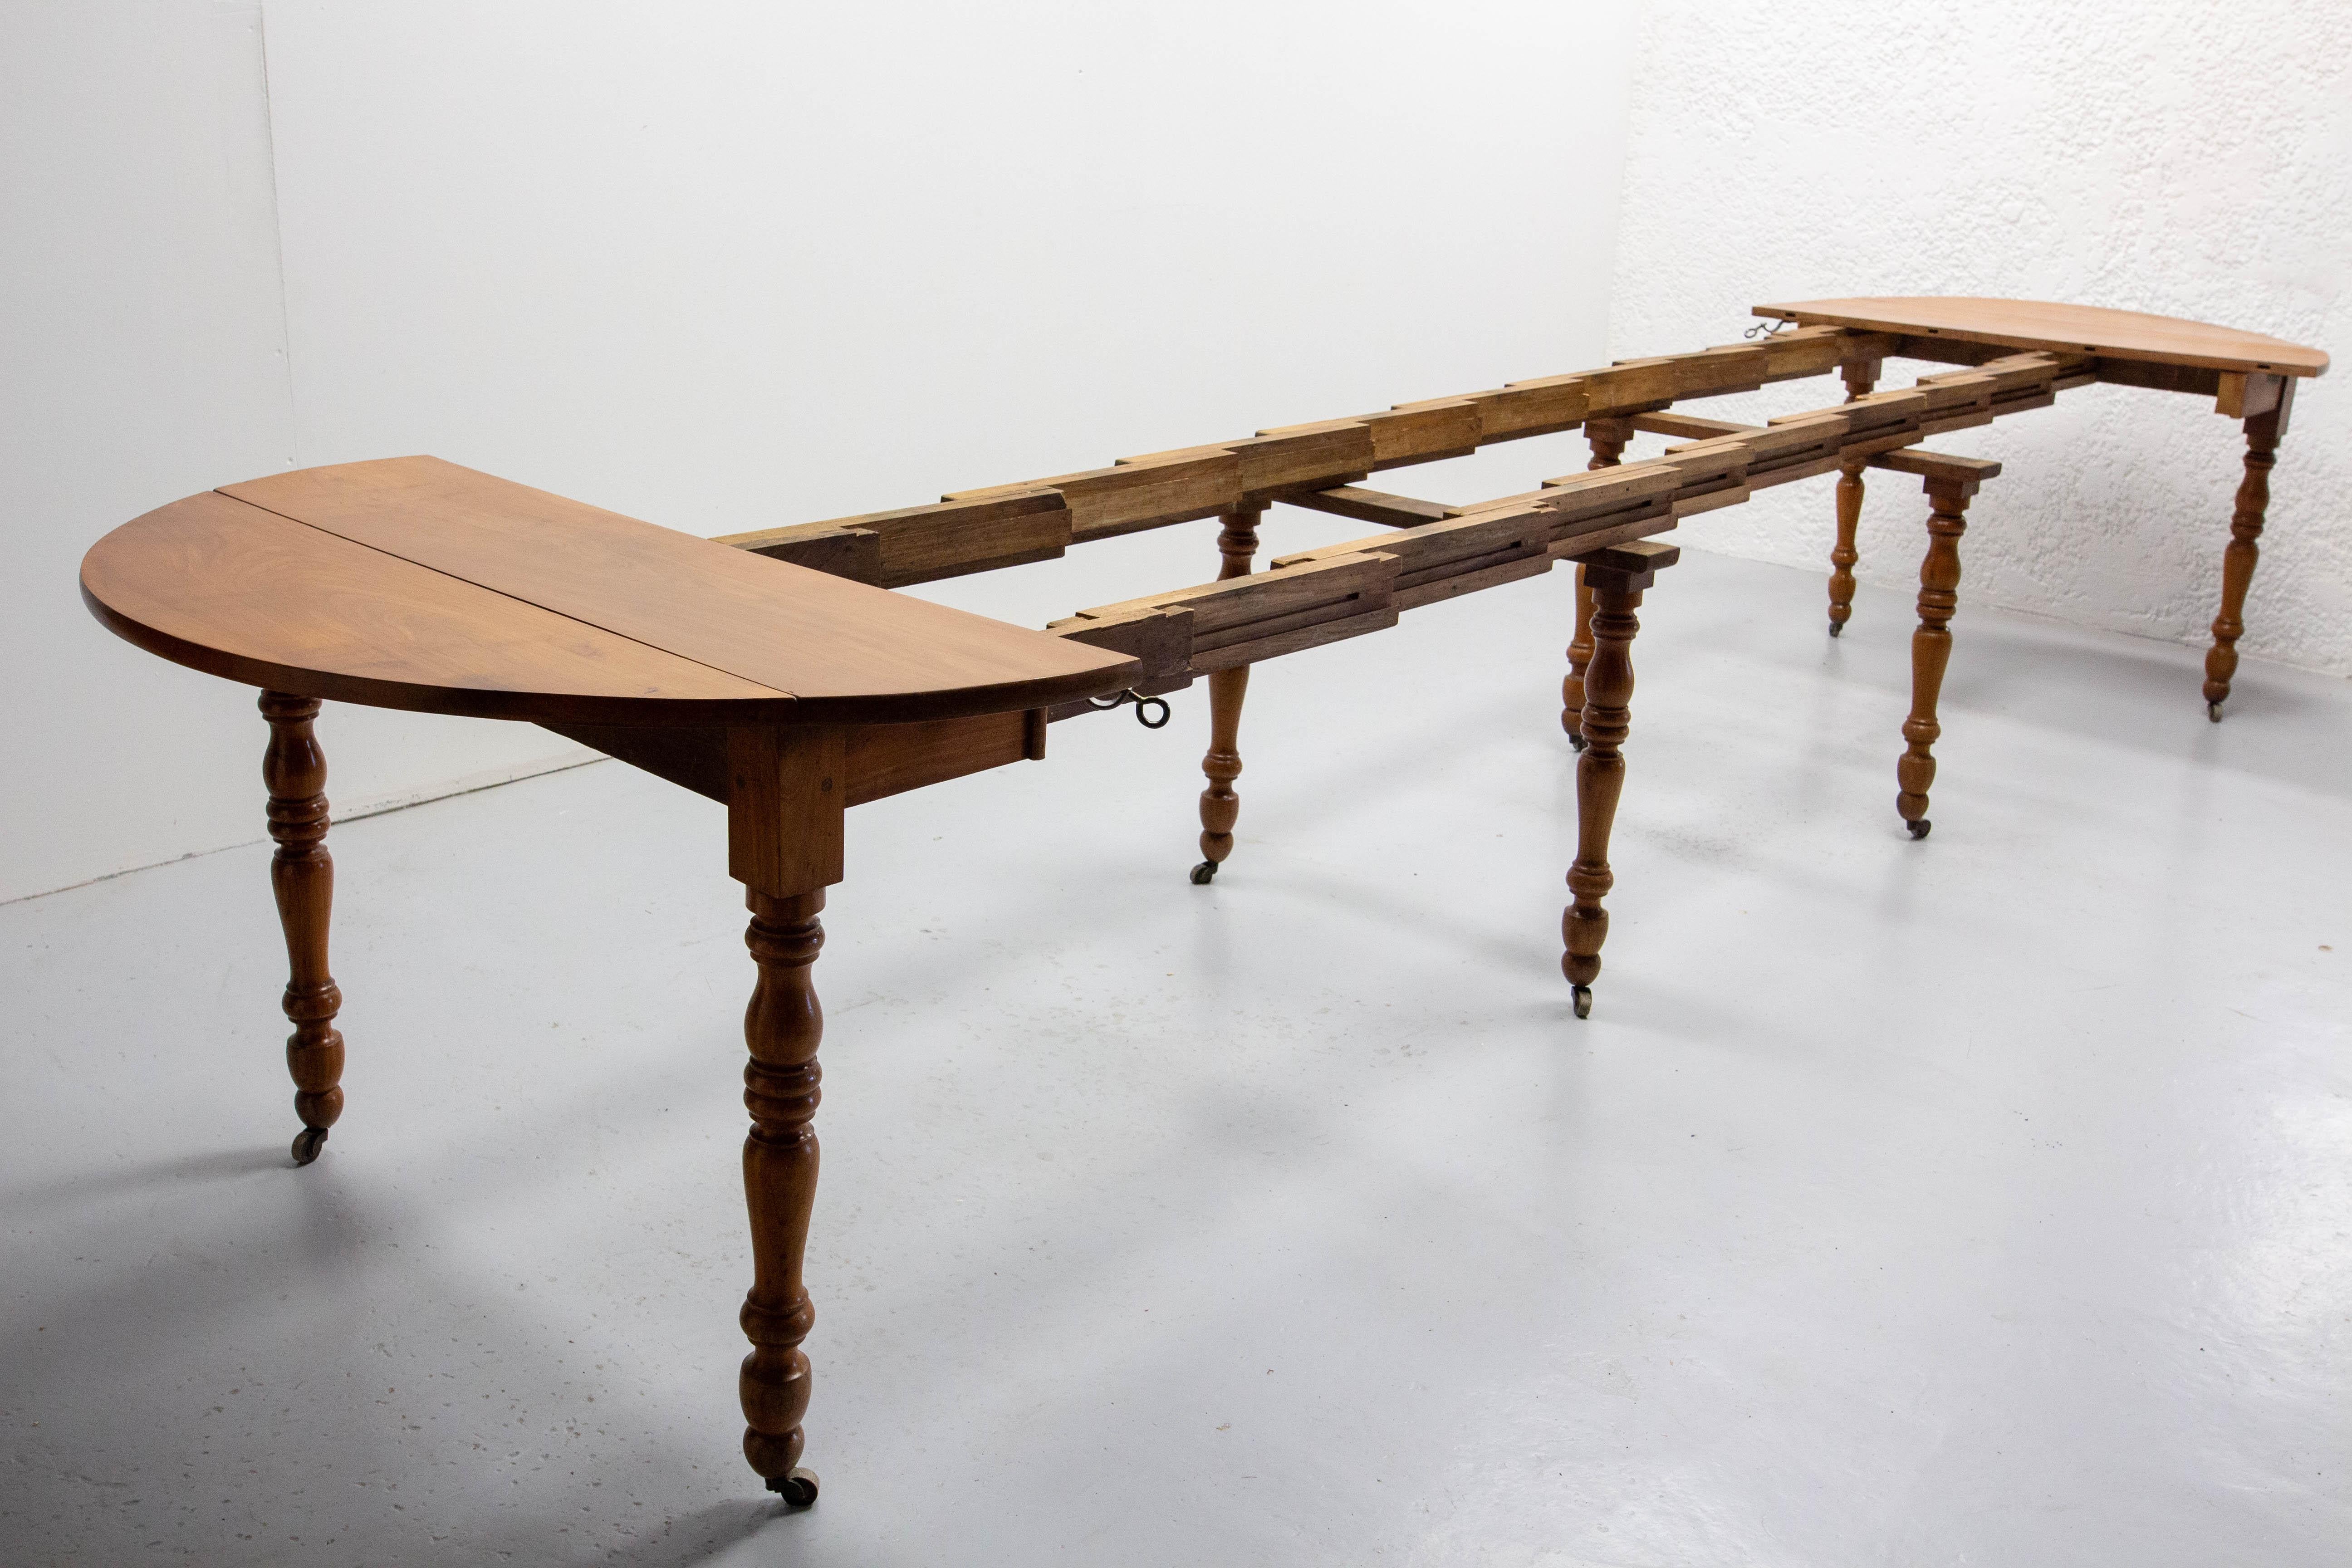 Dieser Esstisch aus Nussbaumholz aus der Louis-Philippe-Periode wurde in der ersten Hälfte des 19. Jahrhunderts in Frankreich hergestellt.
Es ist fast zwei Jahrhunderte alt und befindet sich in einem für sein Alter außergewöhnlichen